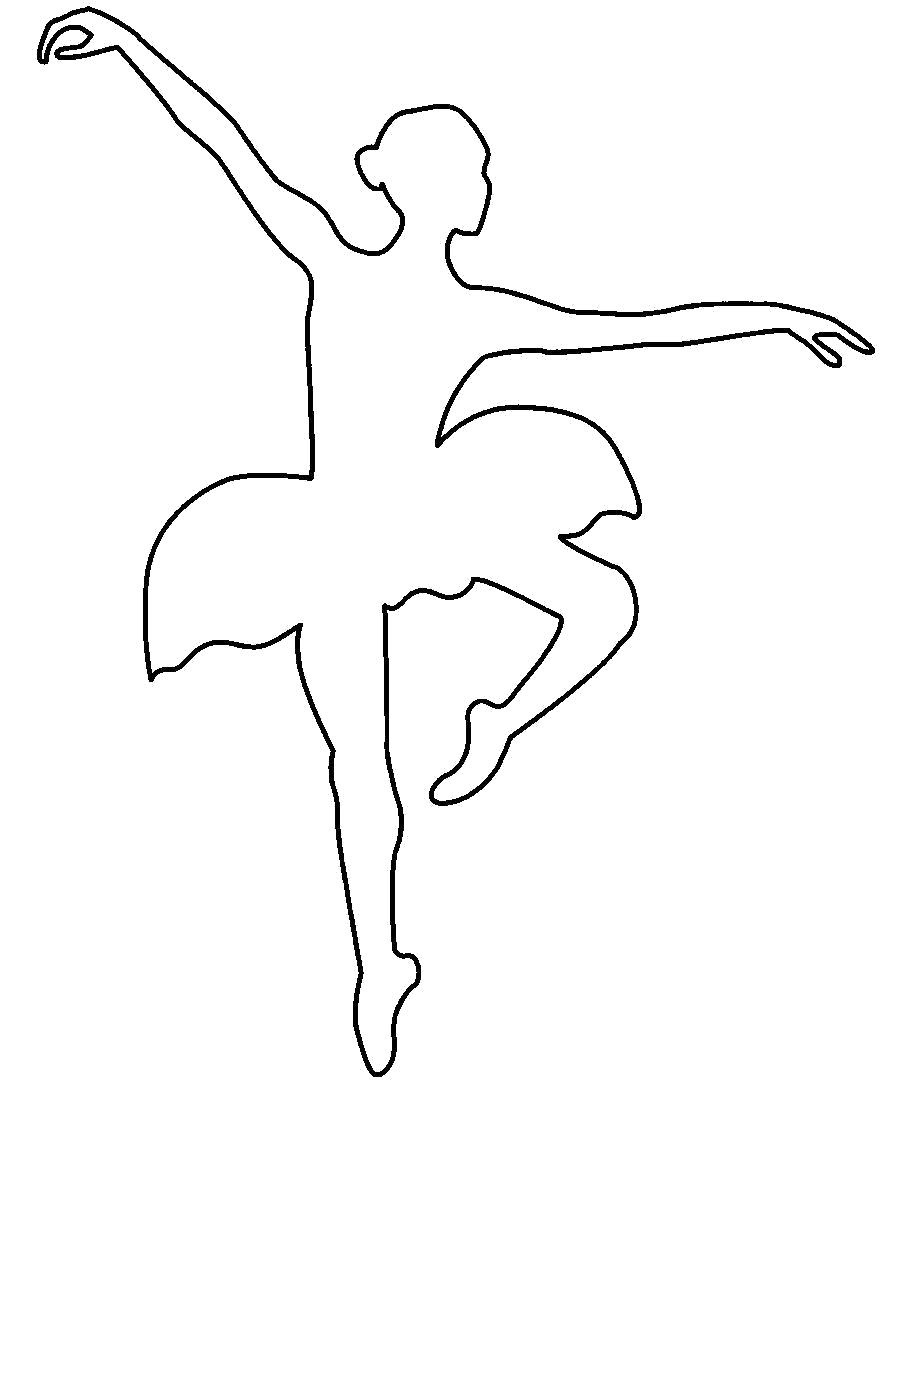 Название: Раскраска Раскраски шаблоны балерин балерина в прыжке контур для вырезания из бумаги. Категория: Шаблон. Теги: Шаблон.